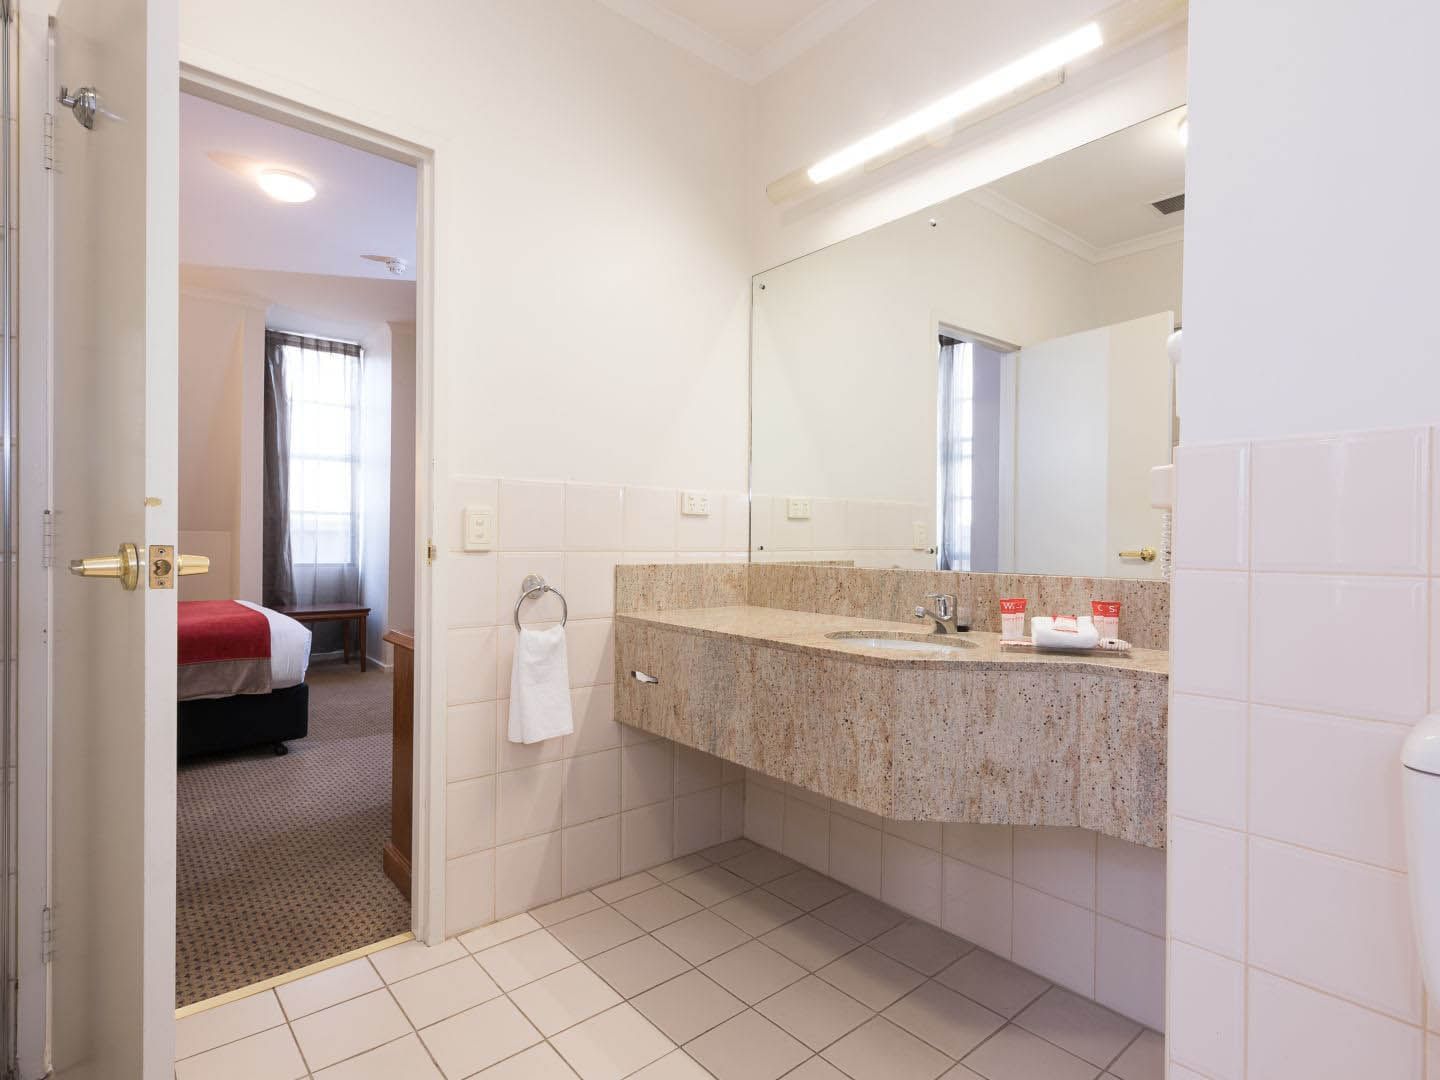 Bathroom vanity area in Deluxe Queen Room at Hotel Grand Chancellor